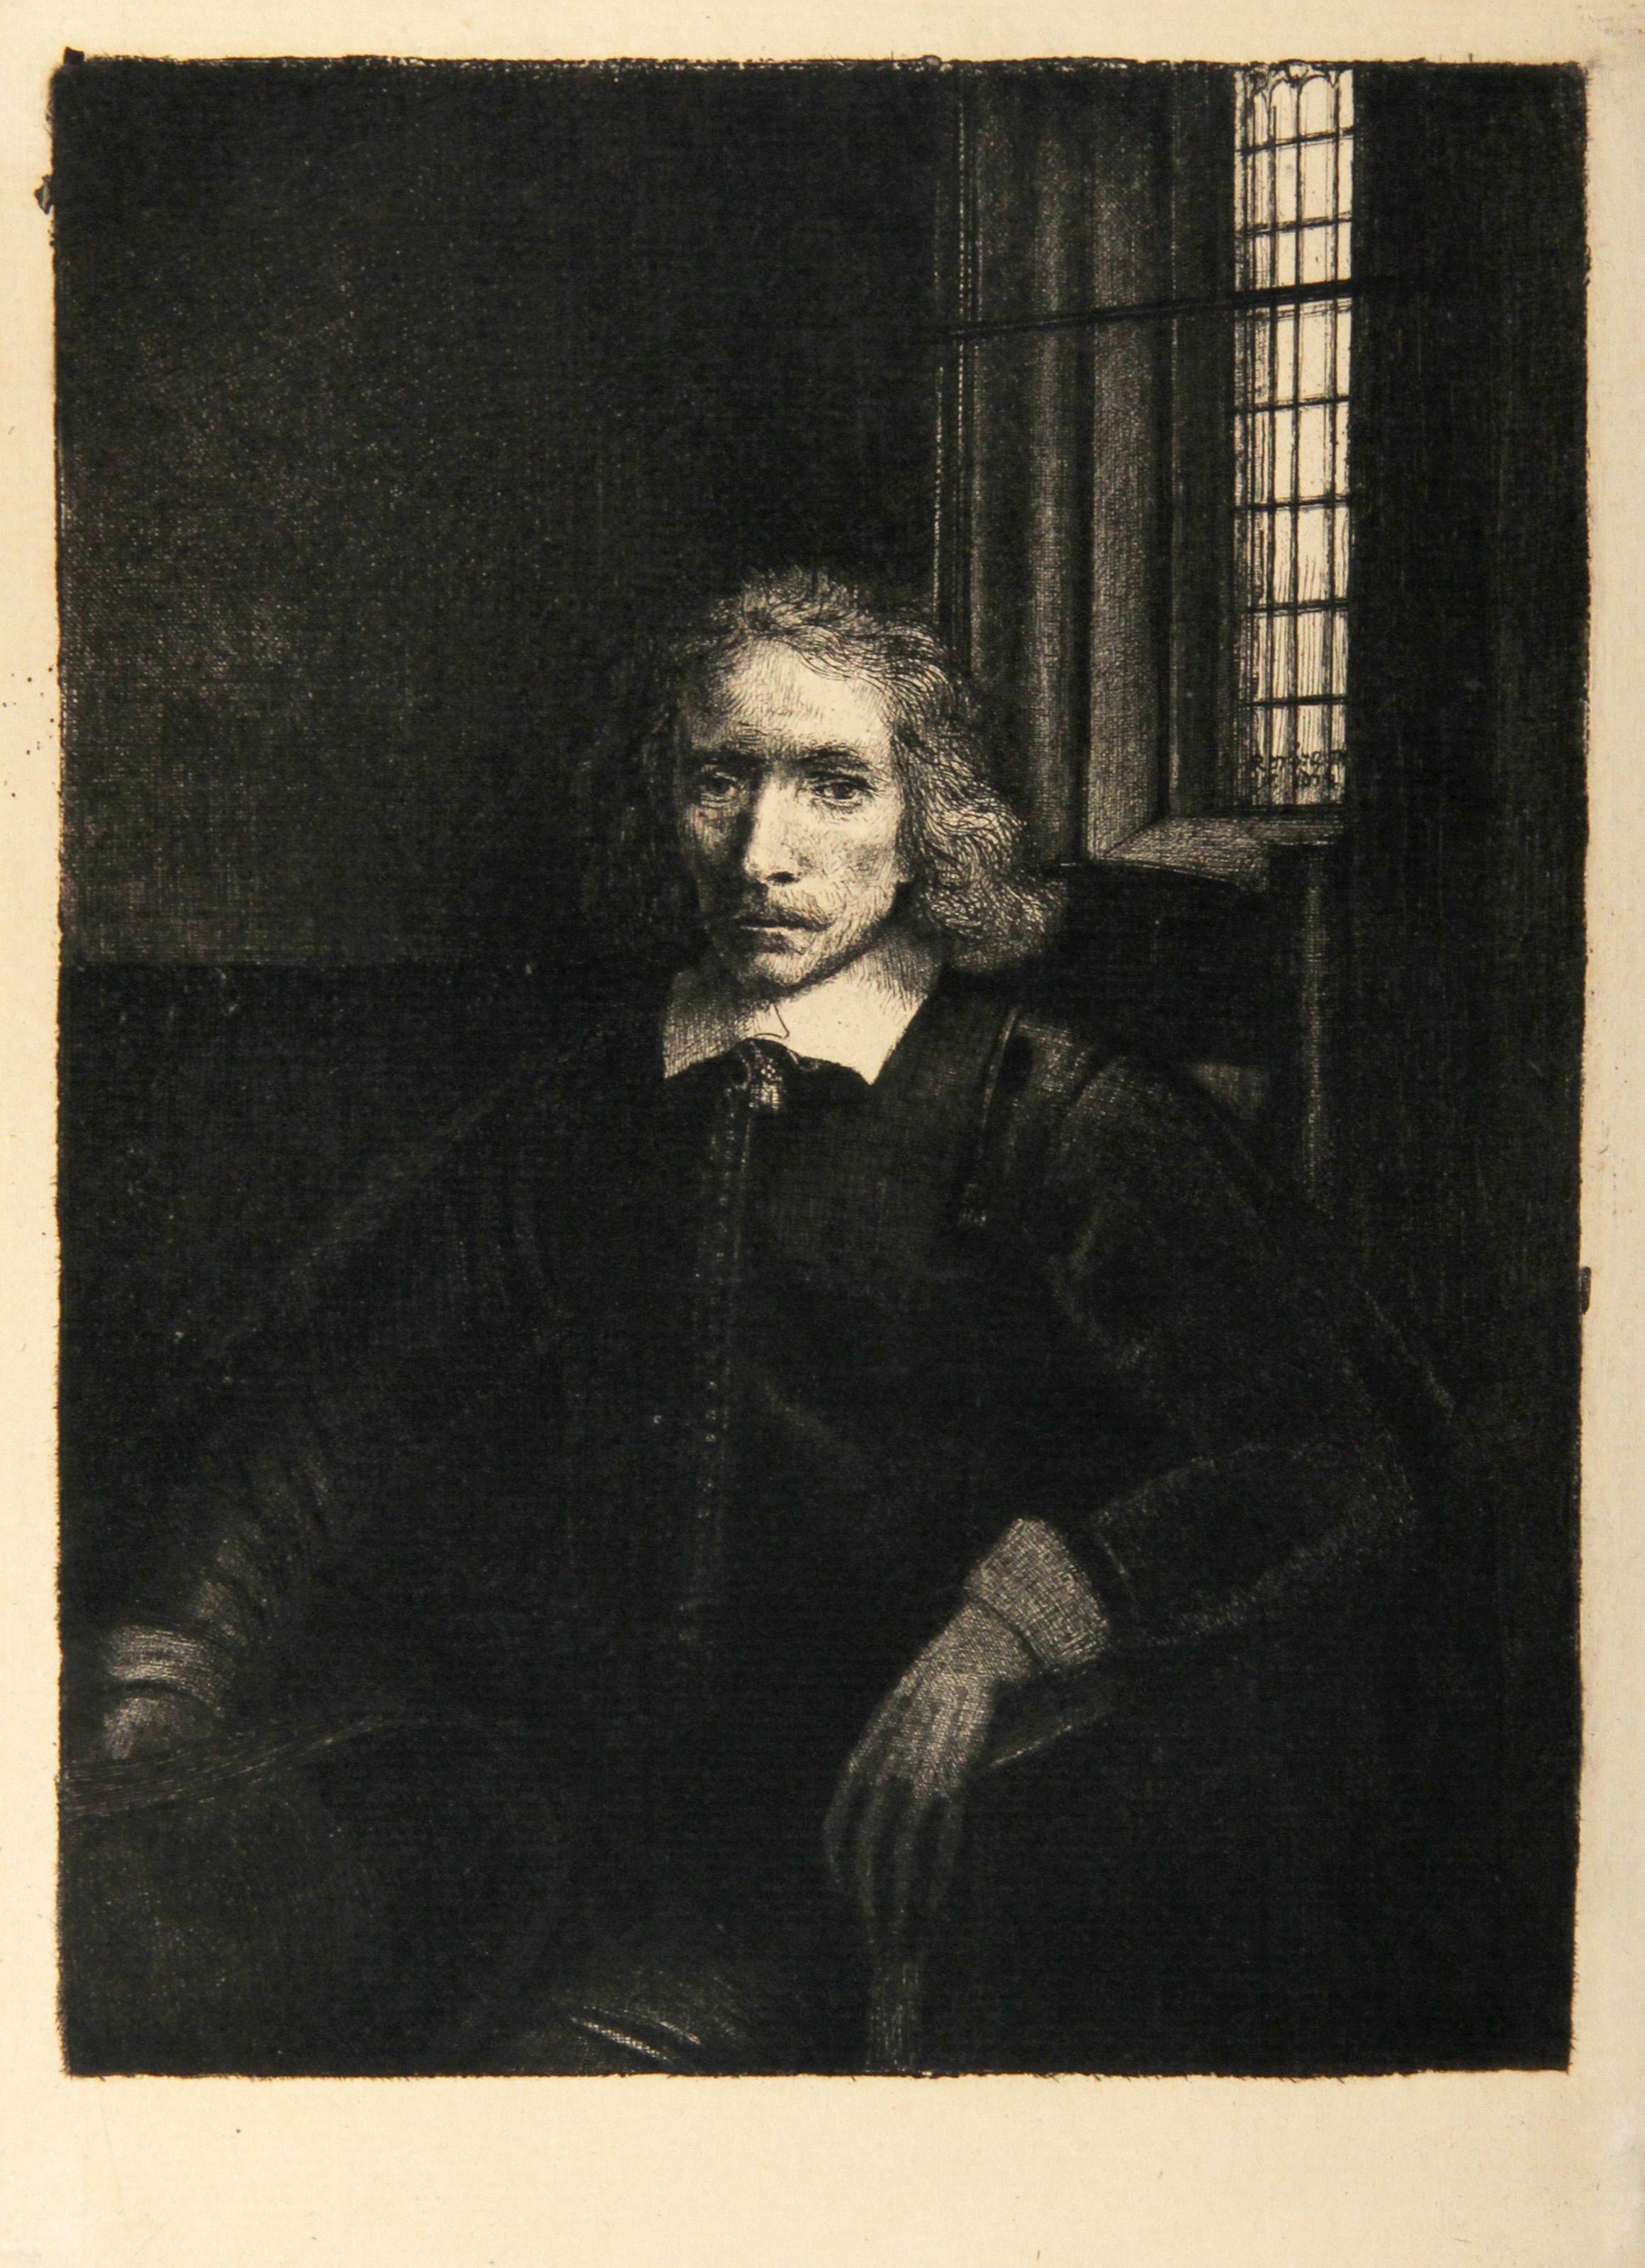 Künstler: Rembrandt van Rijn, nach Amand Durand, Niederländer (1606 - 1669) -  Haring_Le_Jeune (B275), Jahr: 1878 (von Original 1655), Medium: Heliogravüre, Größe: 8.25  x 6.25 in. (20.96  x 15,88 cm), Drucker: Amand Durand, Beschreibung: Der